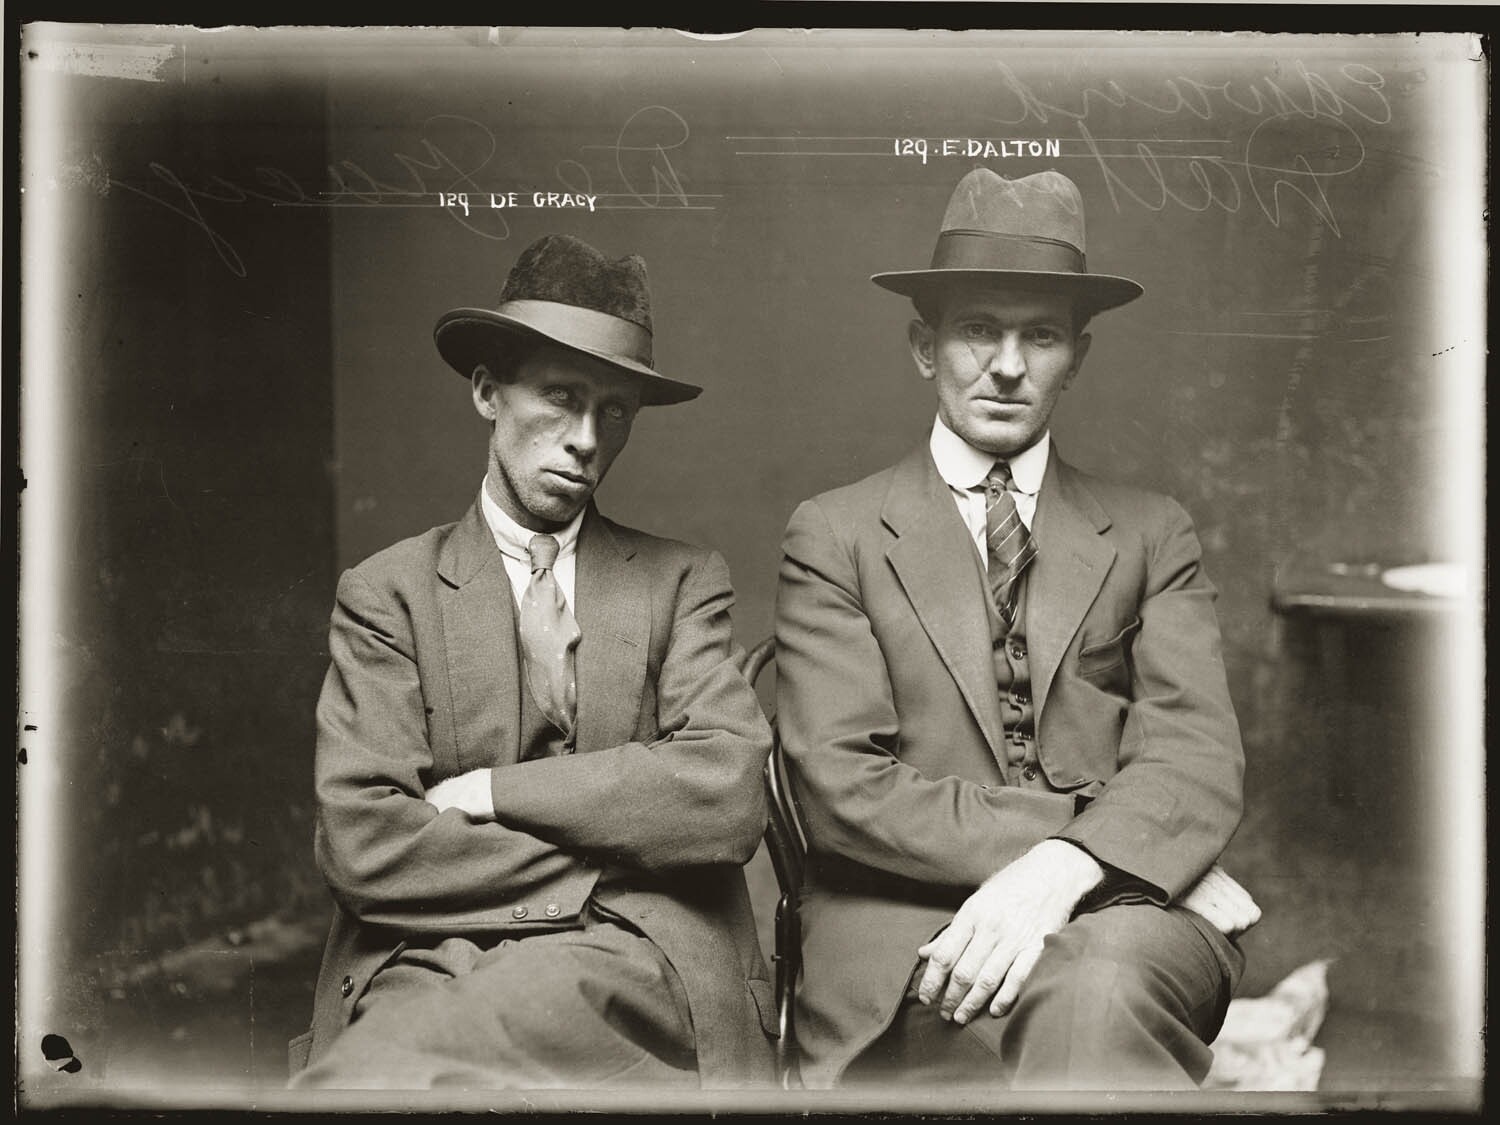 Де Граси и Эдвард Далтон, подробности неизвестны, Центральный полицейский участок, Сидней, примерно 1920 год. Архив судебной фотографии полиции Нового Южного Уэльса